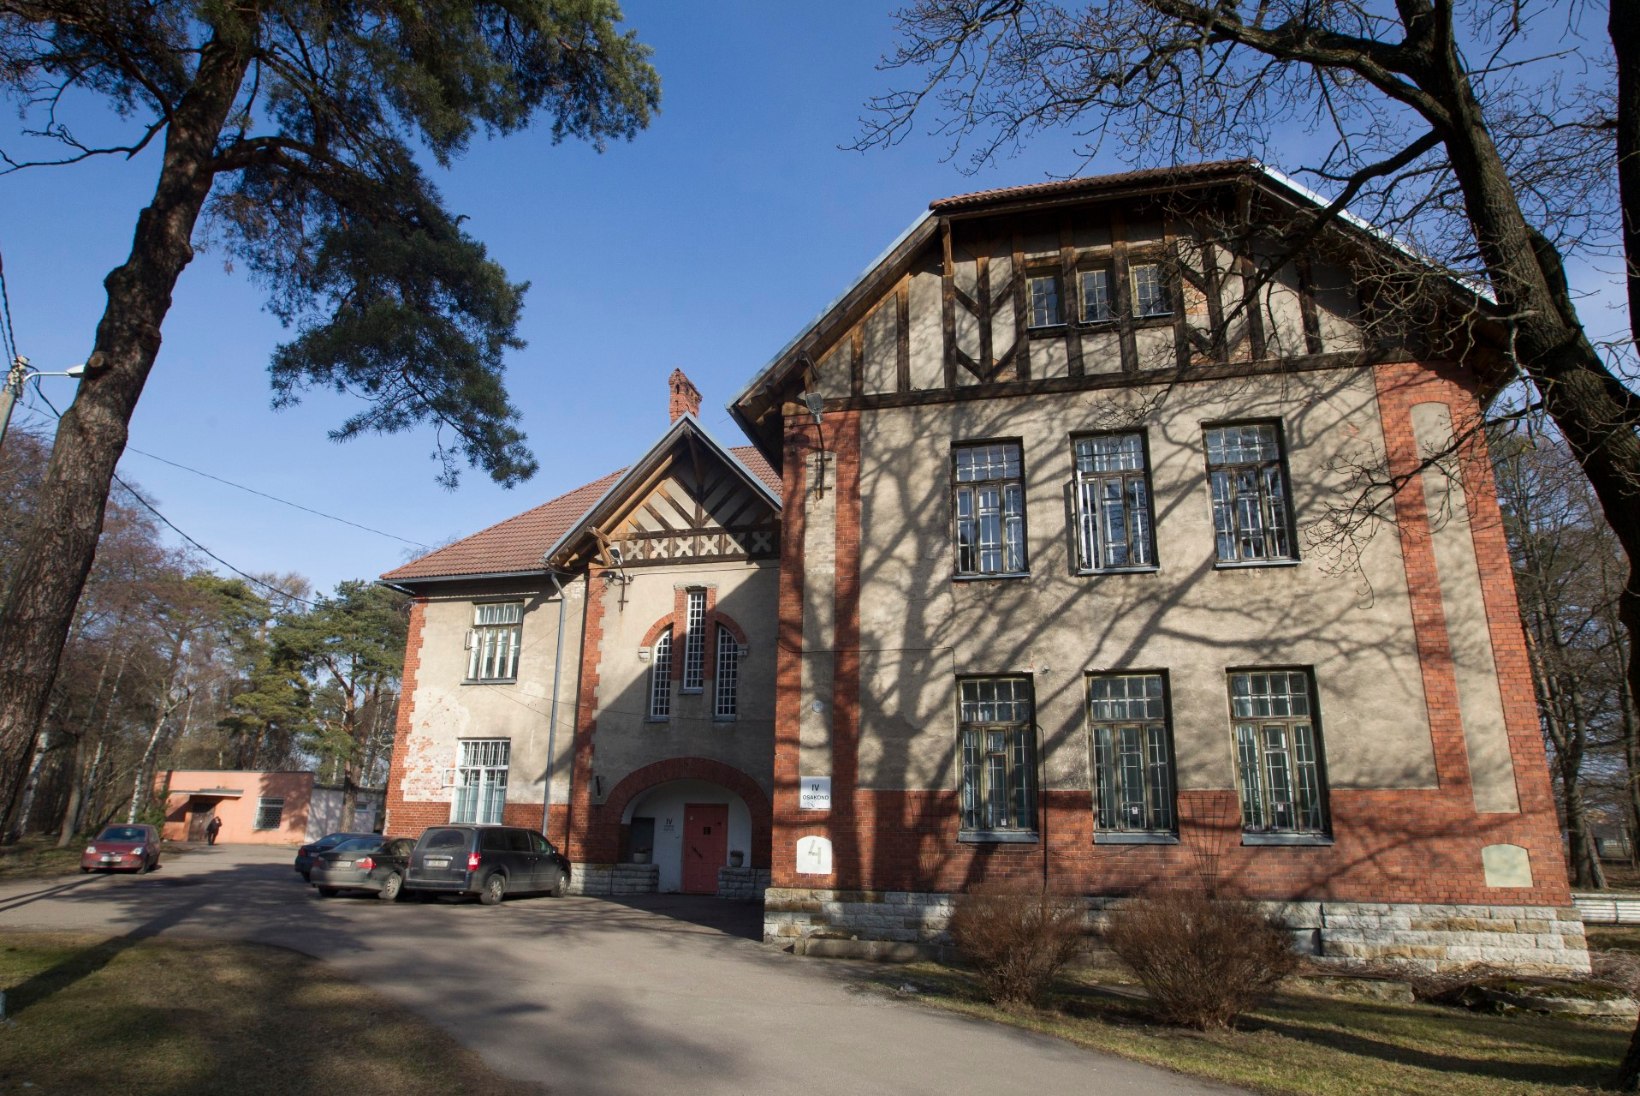 TÄNA AJALOOS | Aastal 1903 avati Tallinnas Seewaldi vaimuhaigla